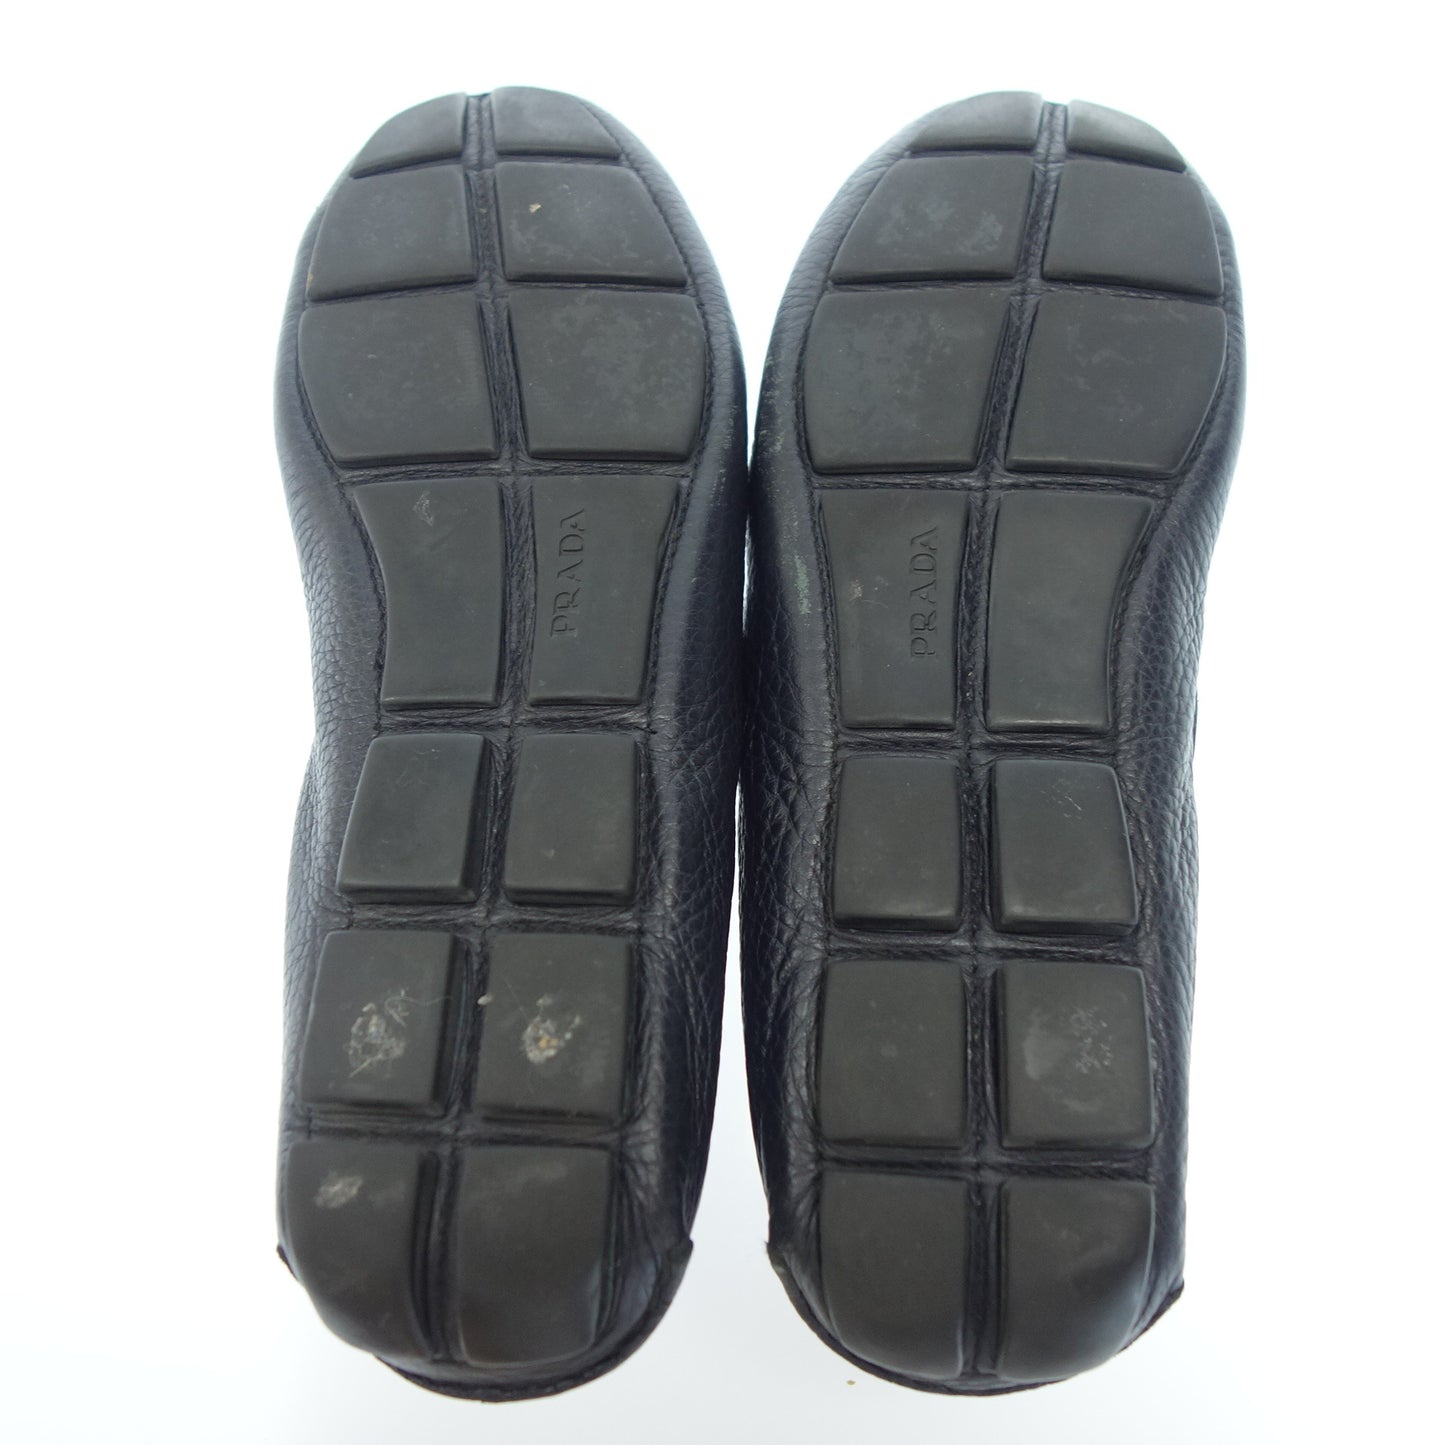 普拉达 (Prada) 驾驶鞋 皮革标识牌 男士 黑色 9 PRADA [AFD9] [二手] 